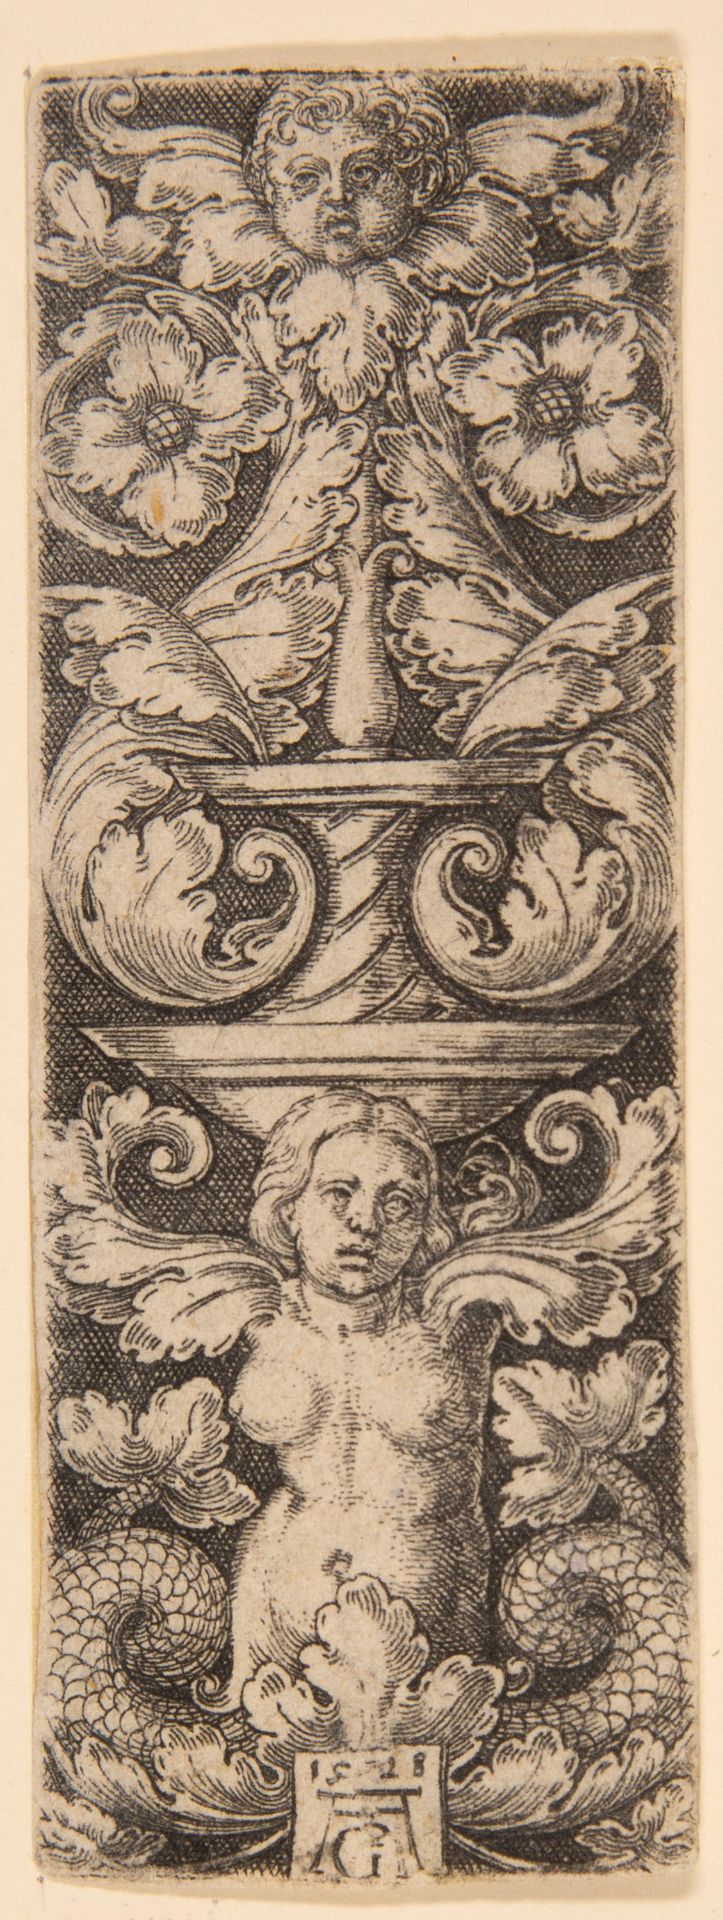 Heinrich Aldegrever. Kandelaber mit Kinderkopf oben und einer Frau mit zwei Fischschwänzen unten. 15